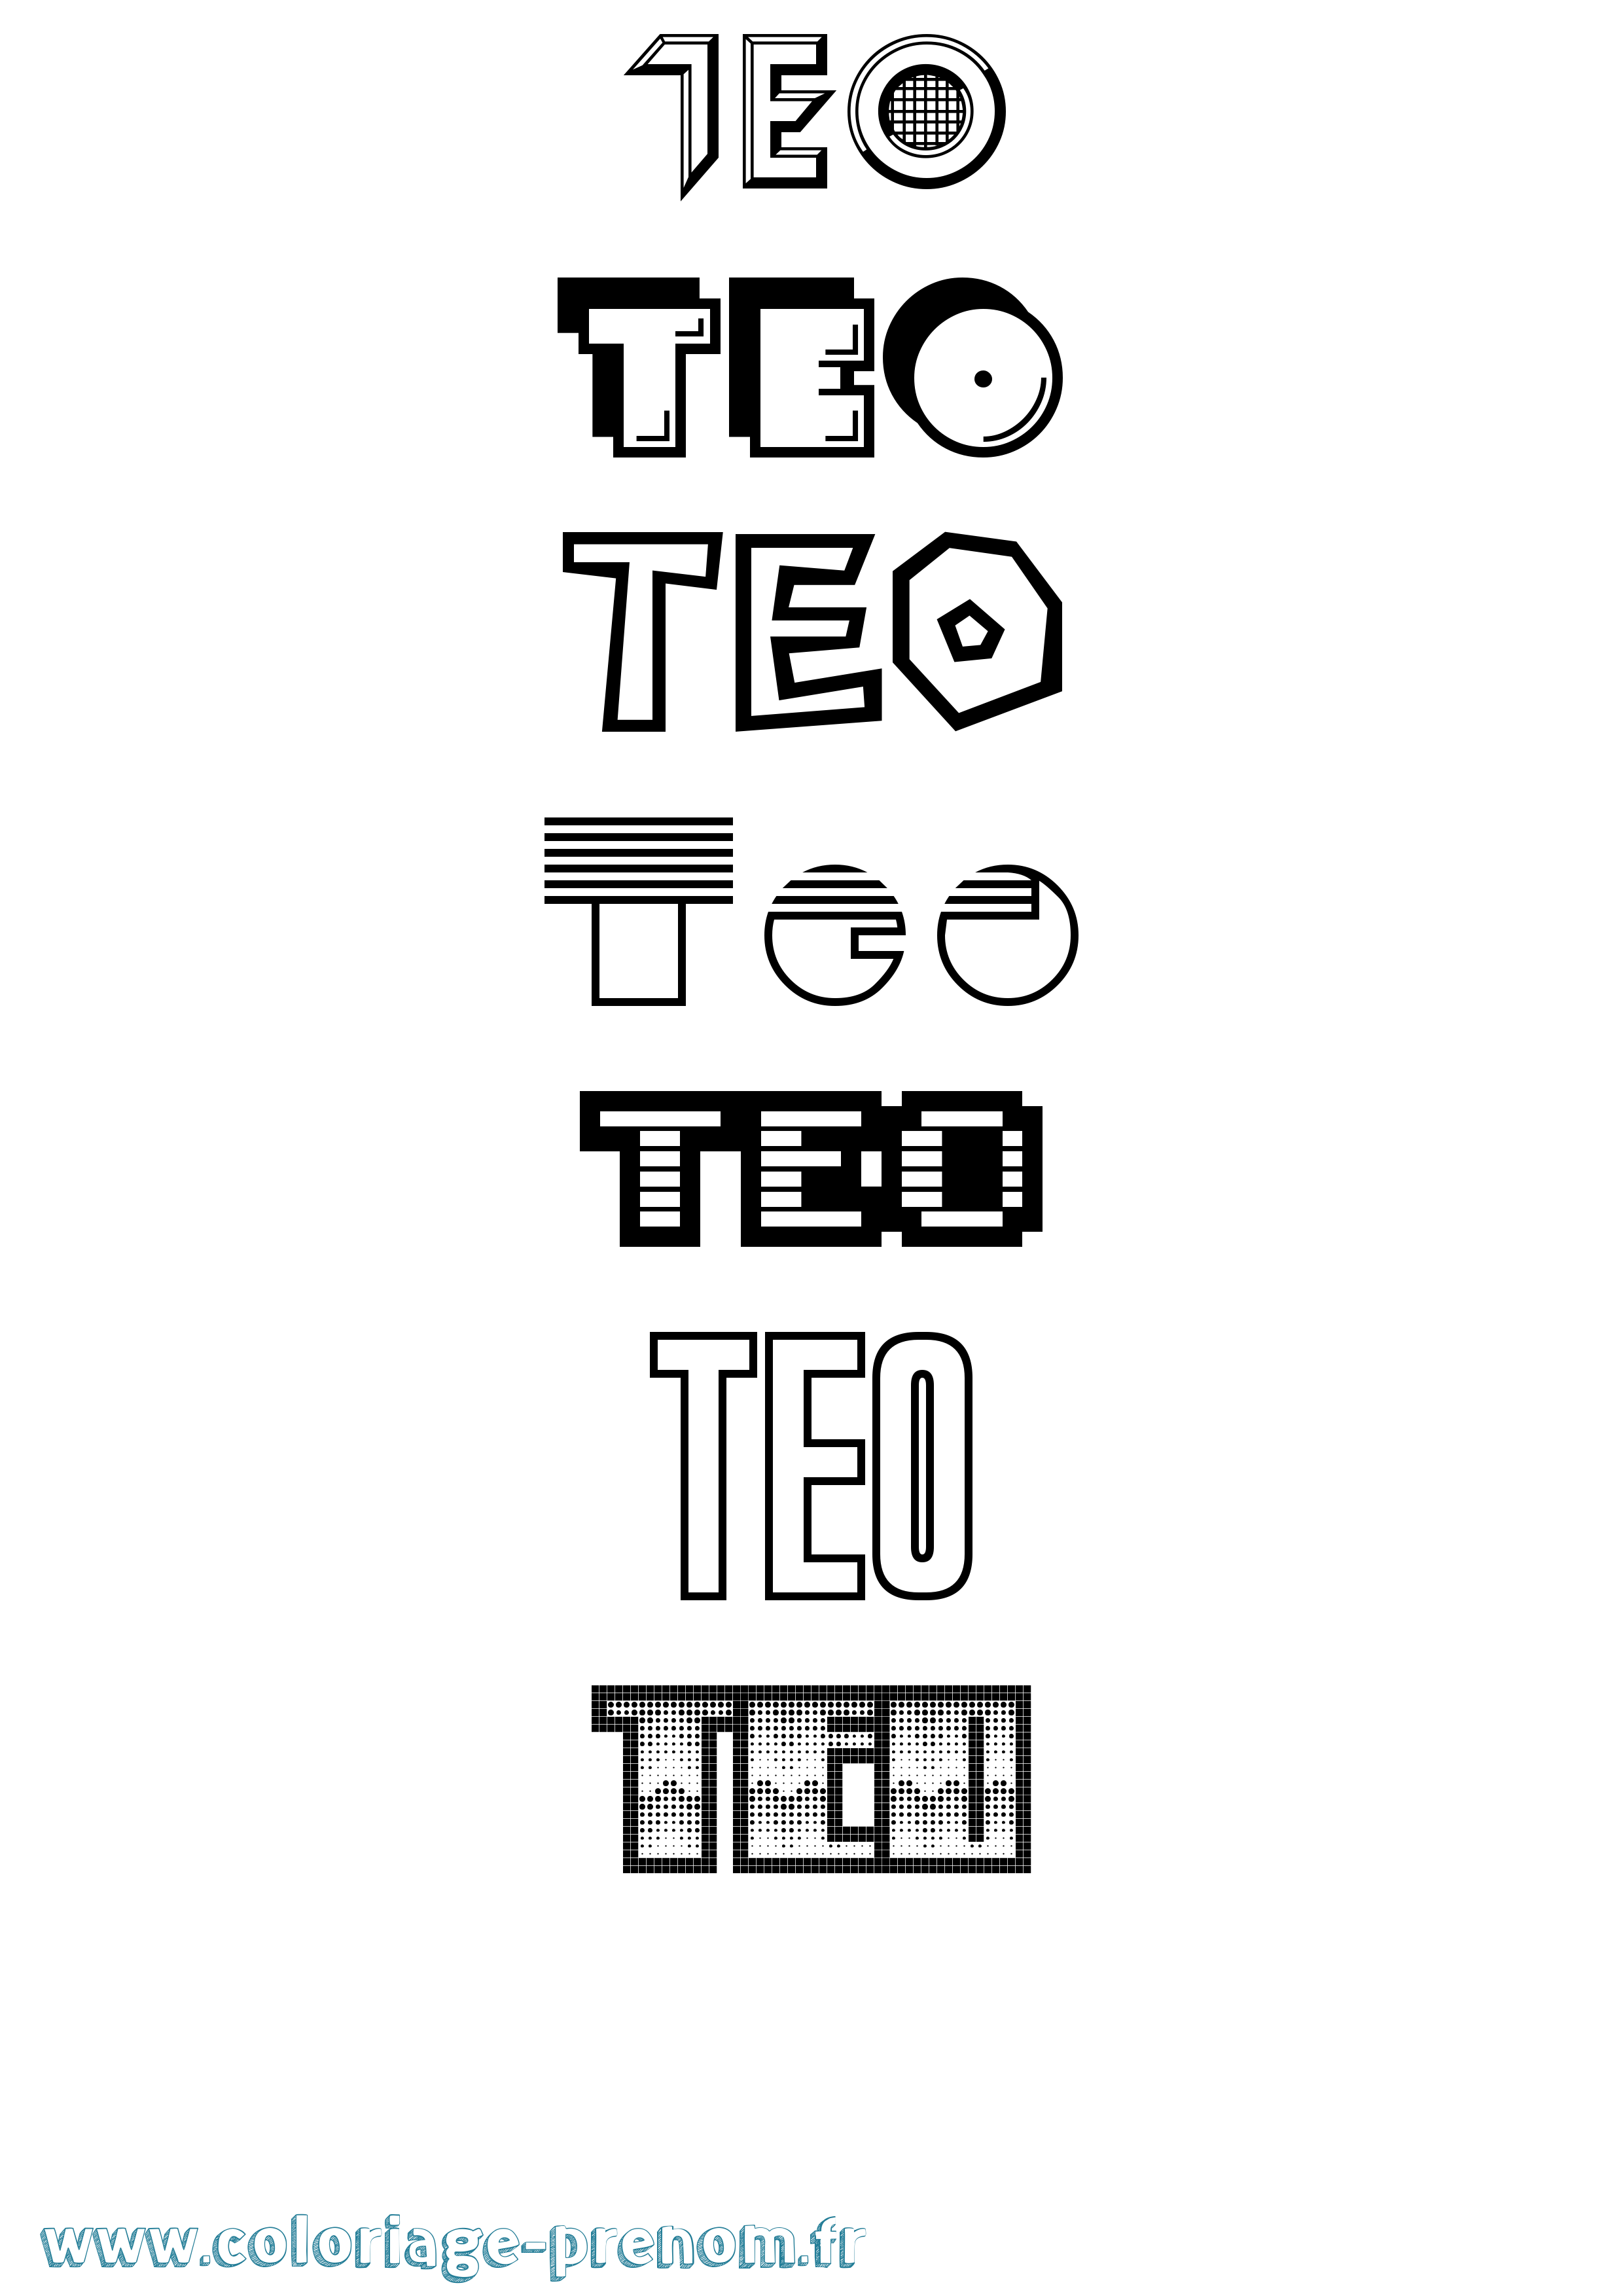 Coloriage prénom Teo Jeux Vidéos